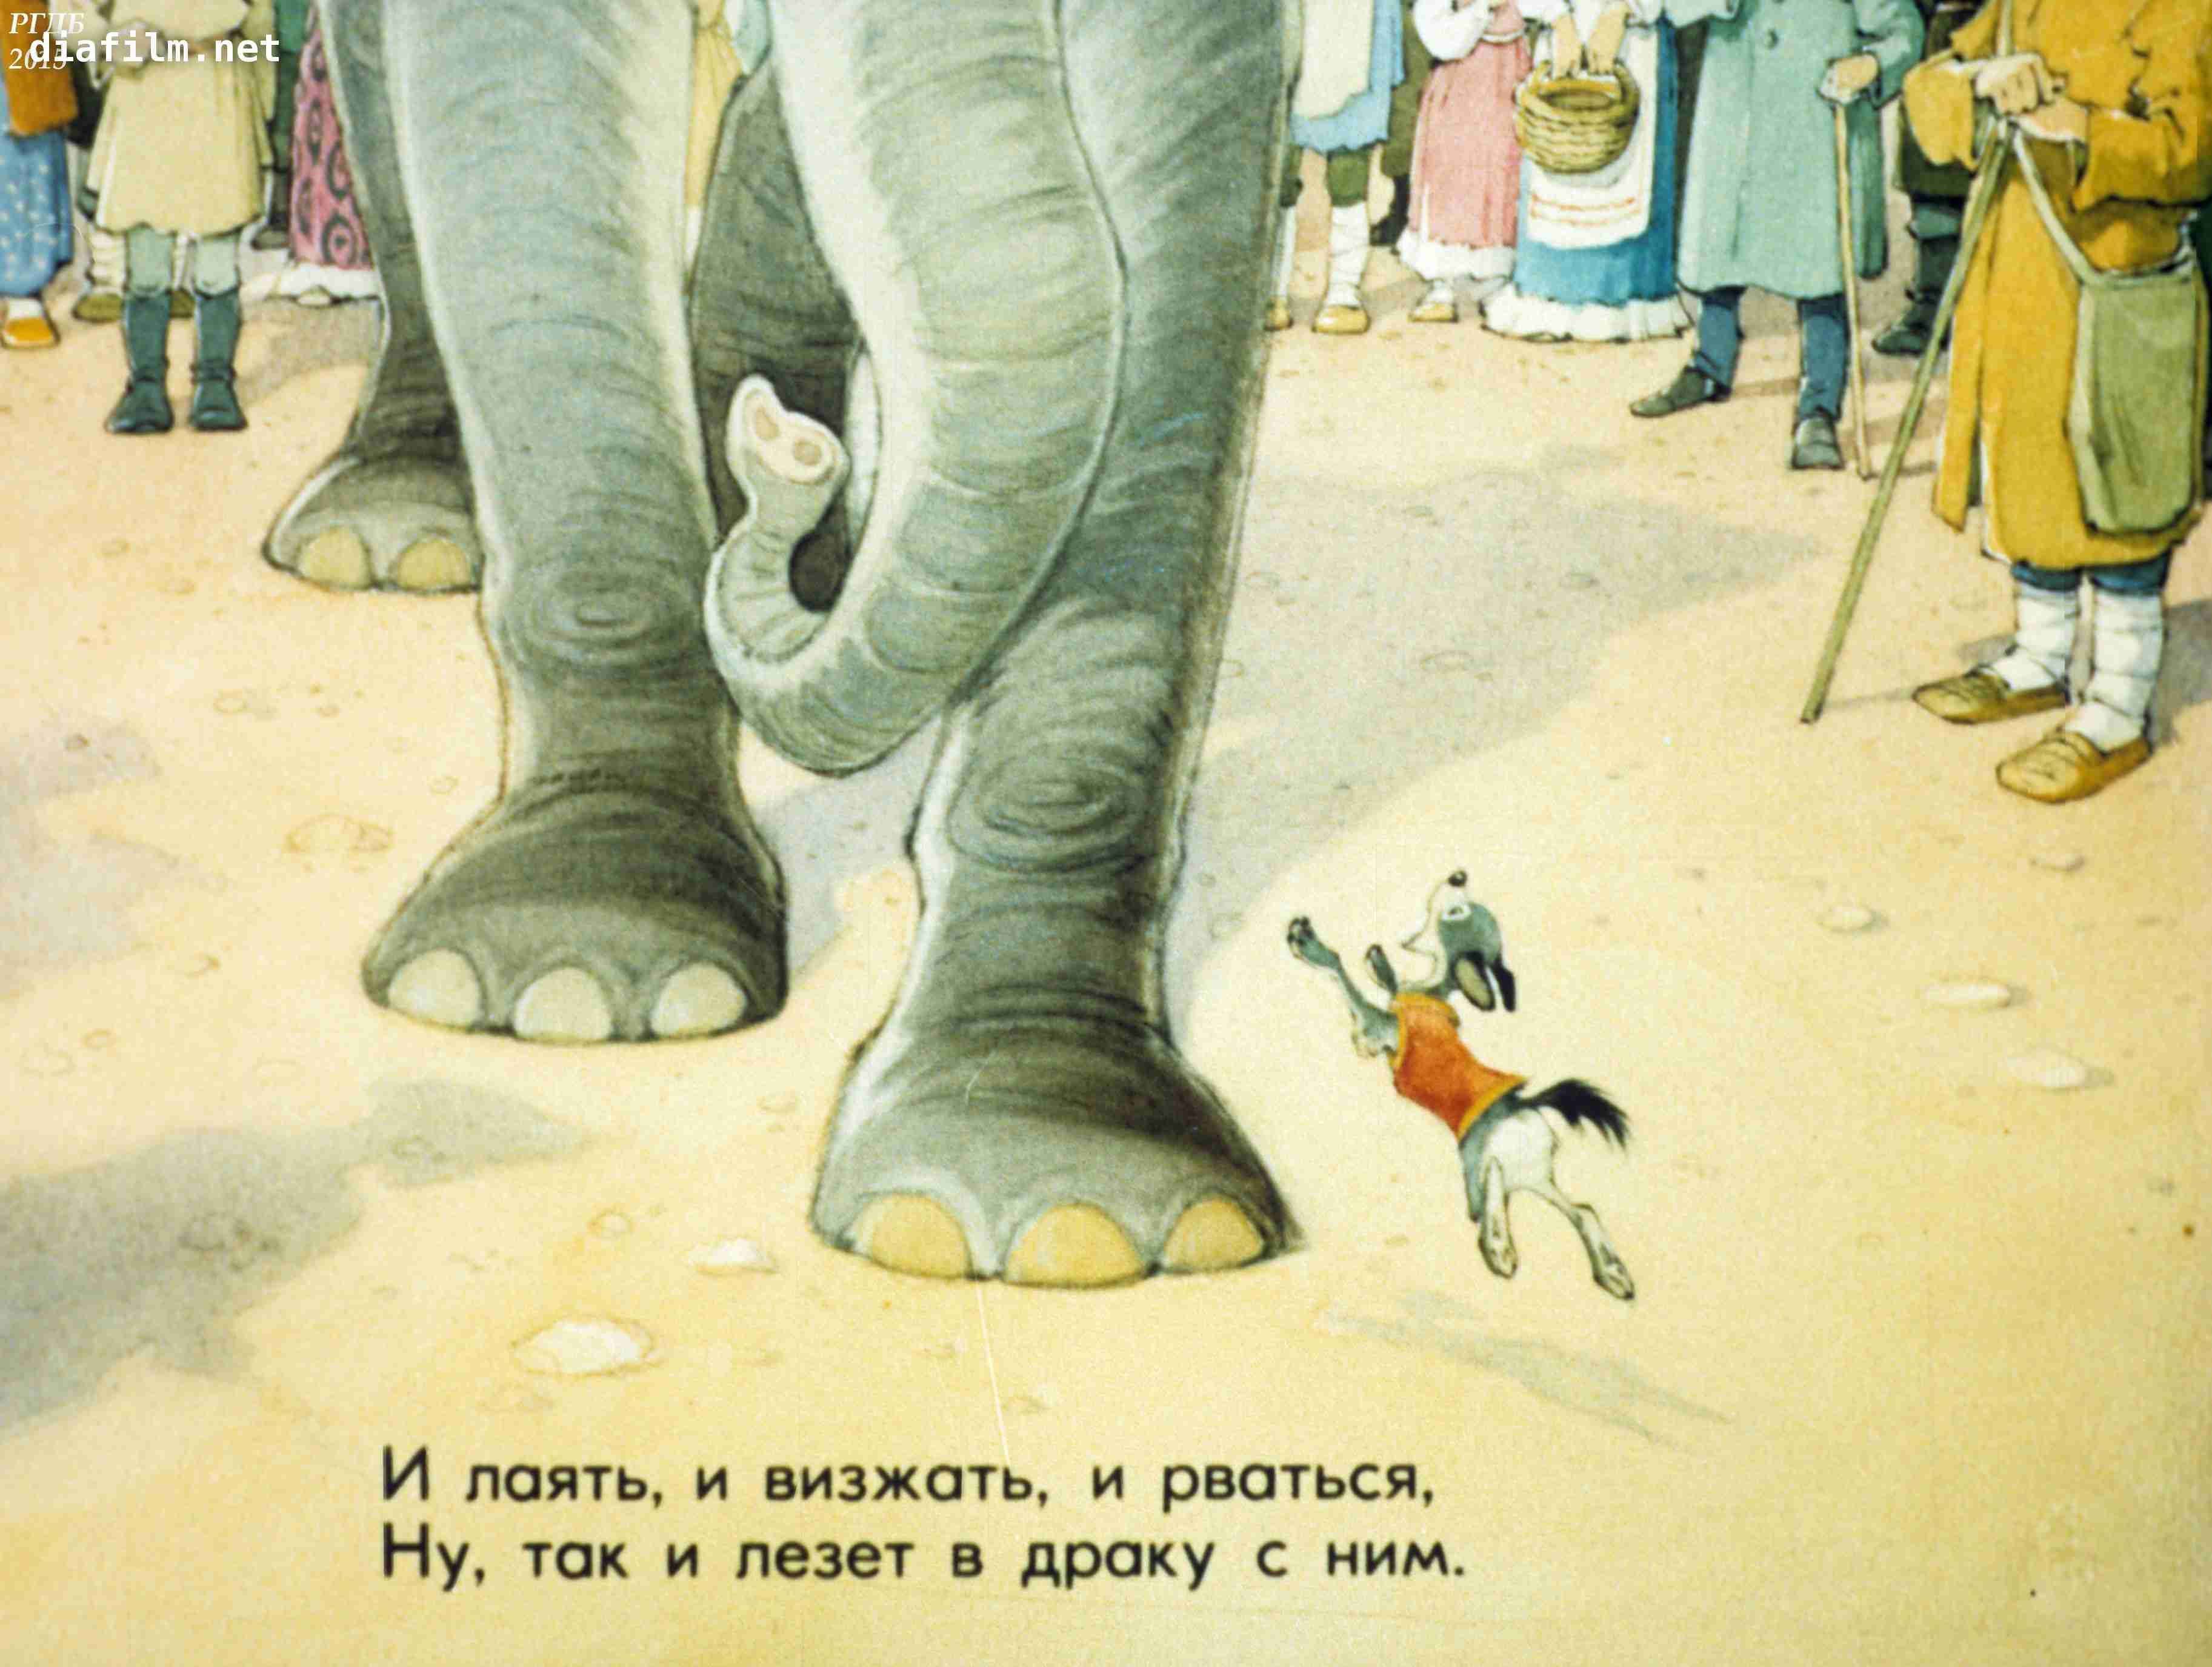 Моська знать она сильна. Басня слон и моська Крылов. Моська лает на слона. 1983 Басни слон и моська. Басня Крылова собака и слон.